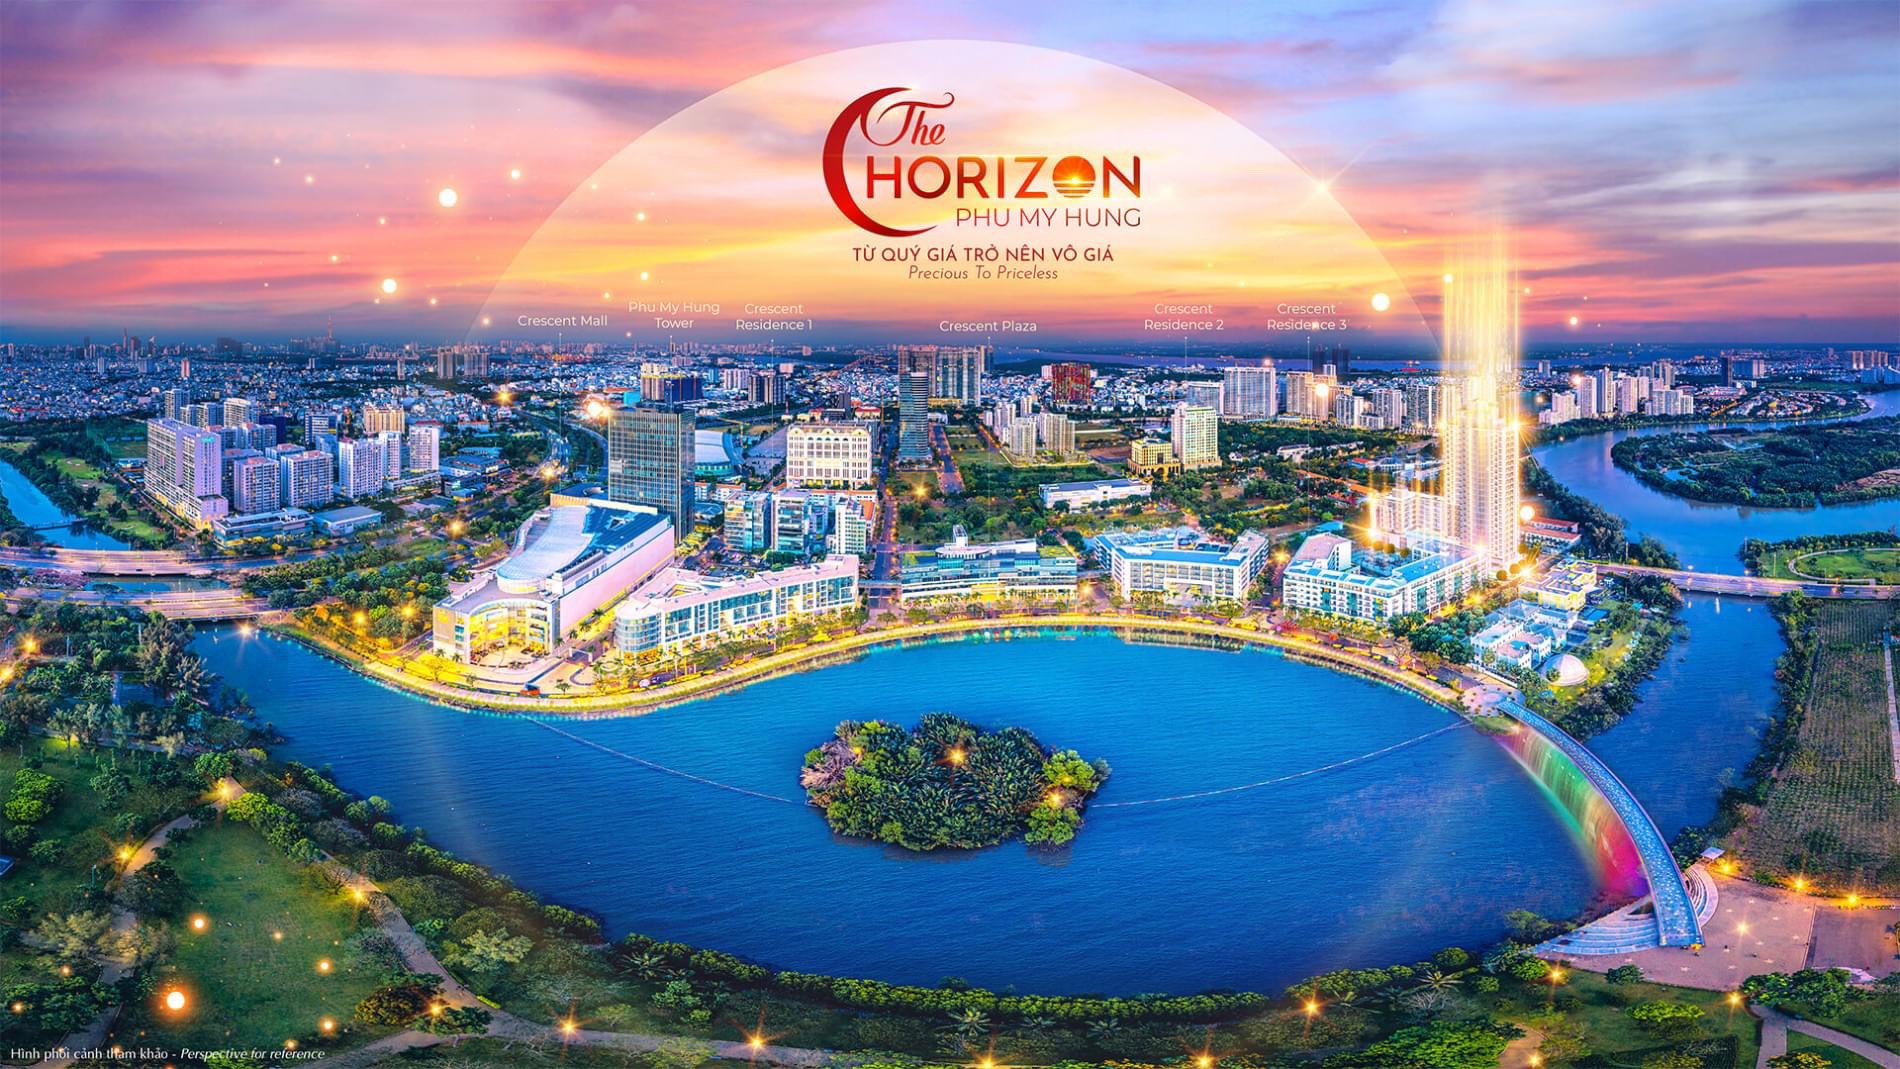 Căn hộ Horizon Hồ Bán Nguyệt Phú Mỹ Hưng - căn hộ 2 view đặc biệt trực tiếp chủ đầu tư Phú Mỹ Hưng - Ảnh 4